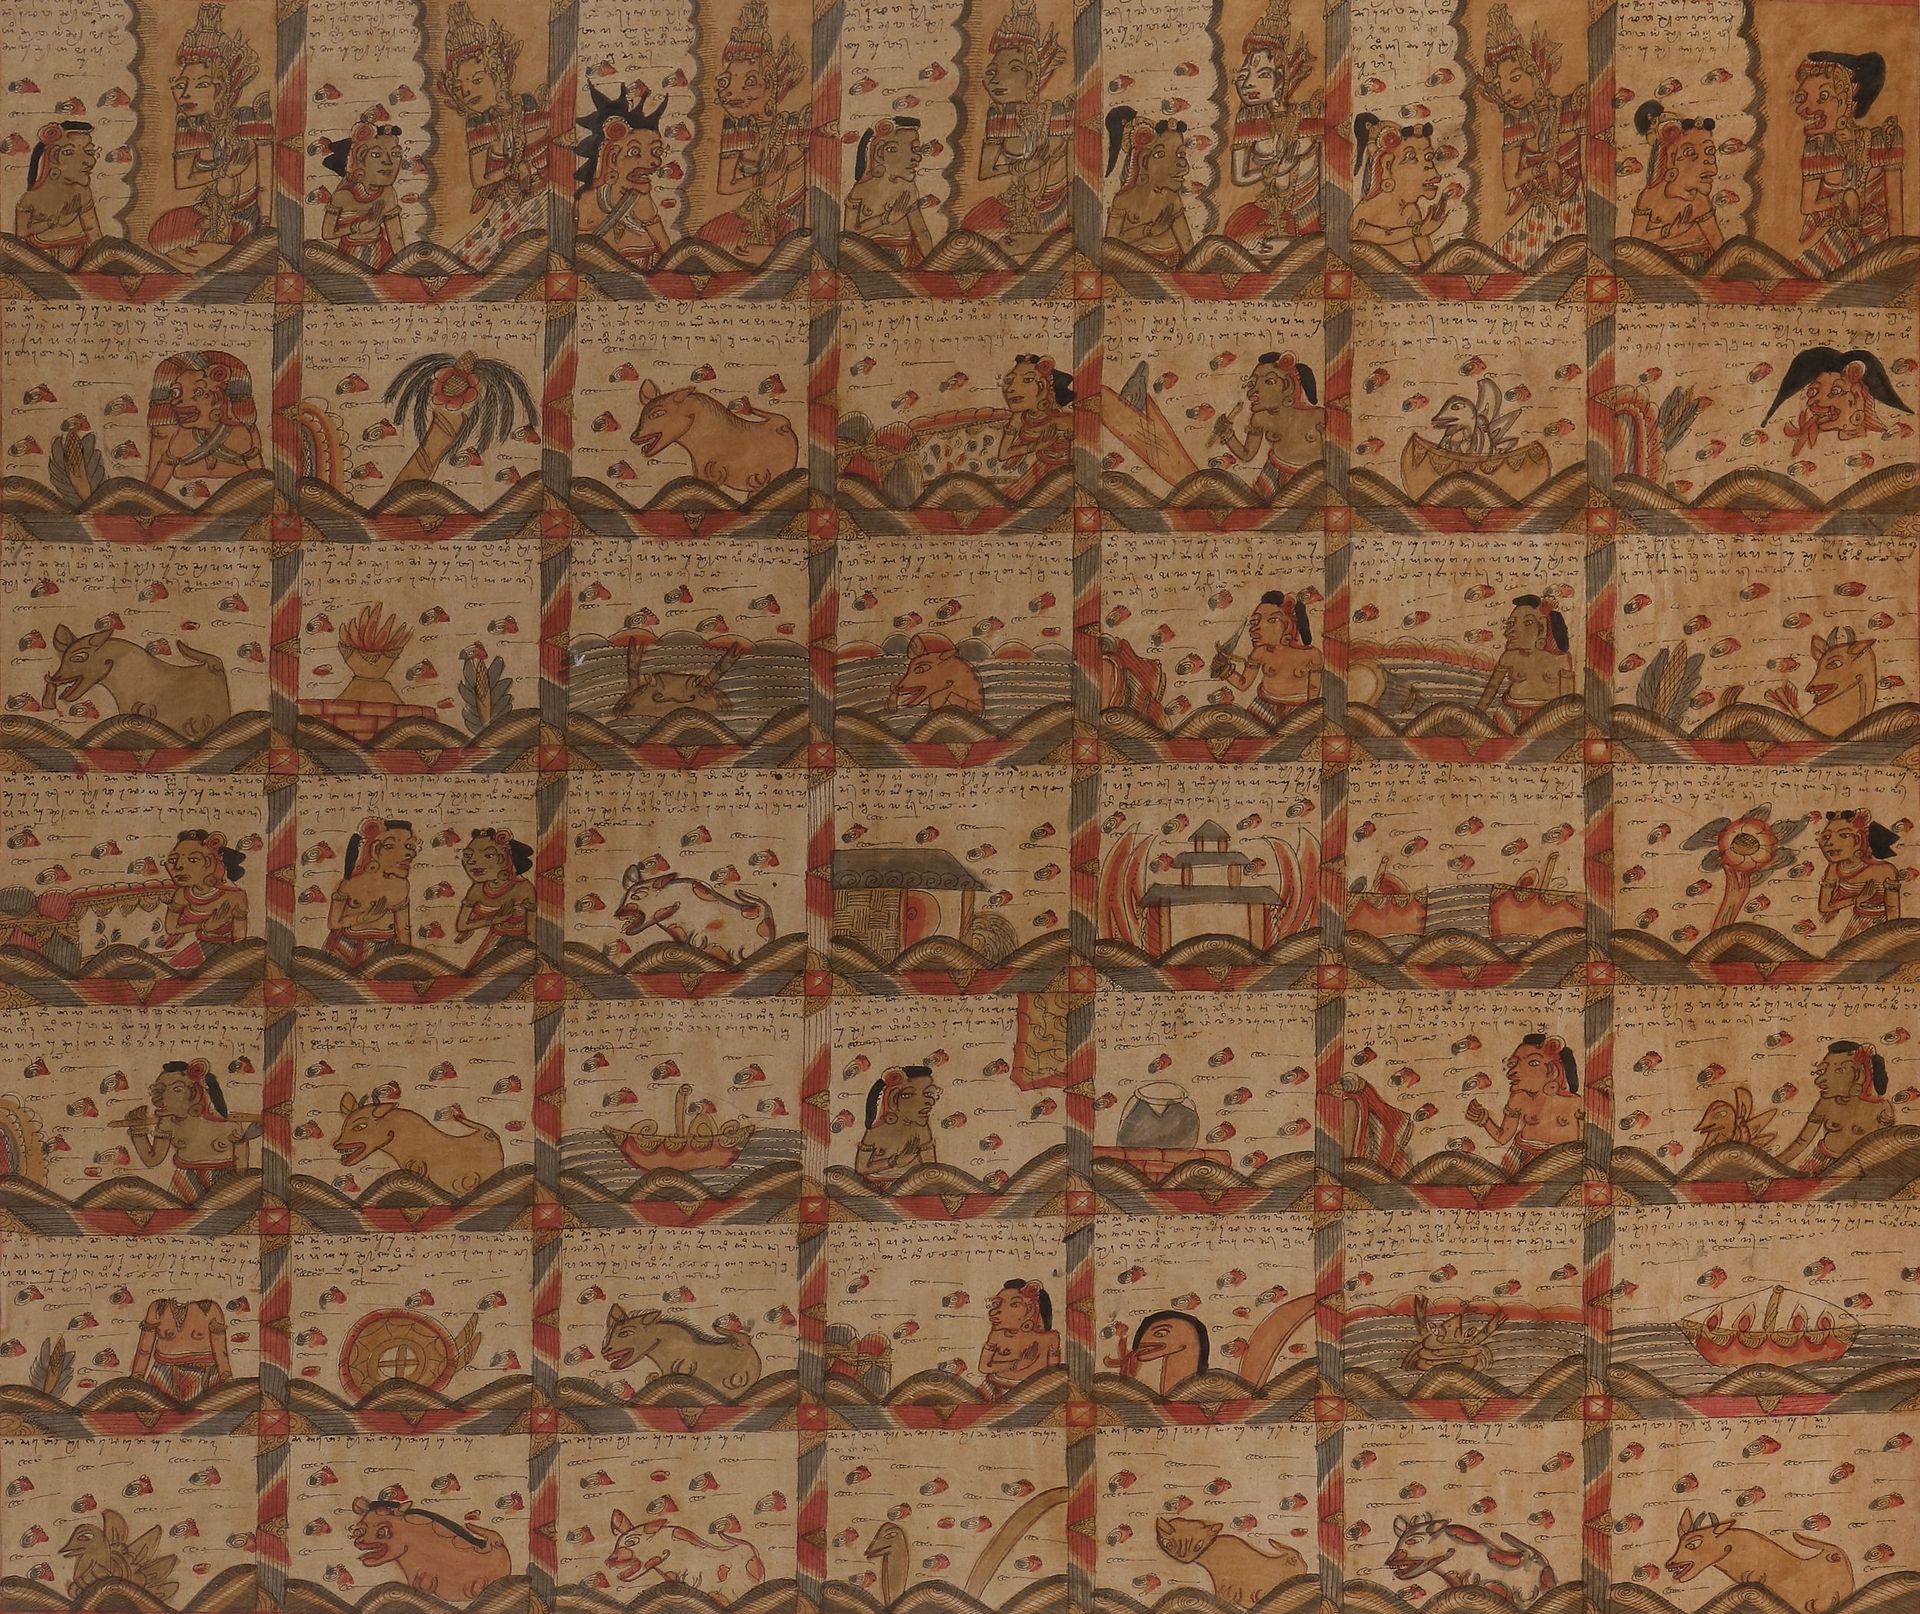 Null Palelintangan（占星历），巴厘岛，20世纪
纺织品上的绘画，分为49个部分，包含神、灵、动物和各种符号的表现，并附有印尼文字
。
 
12&hellip;